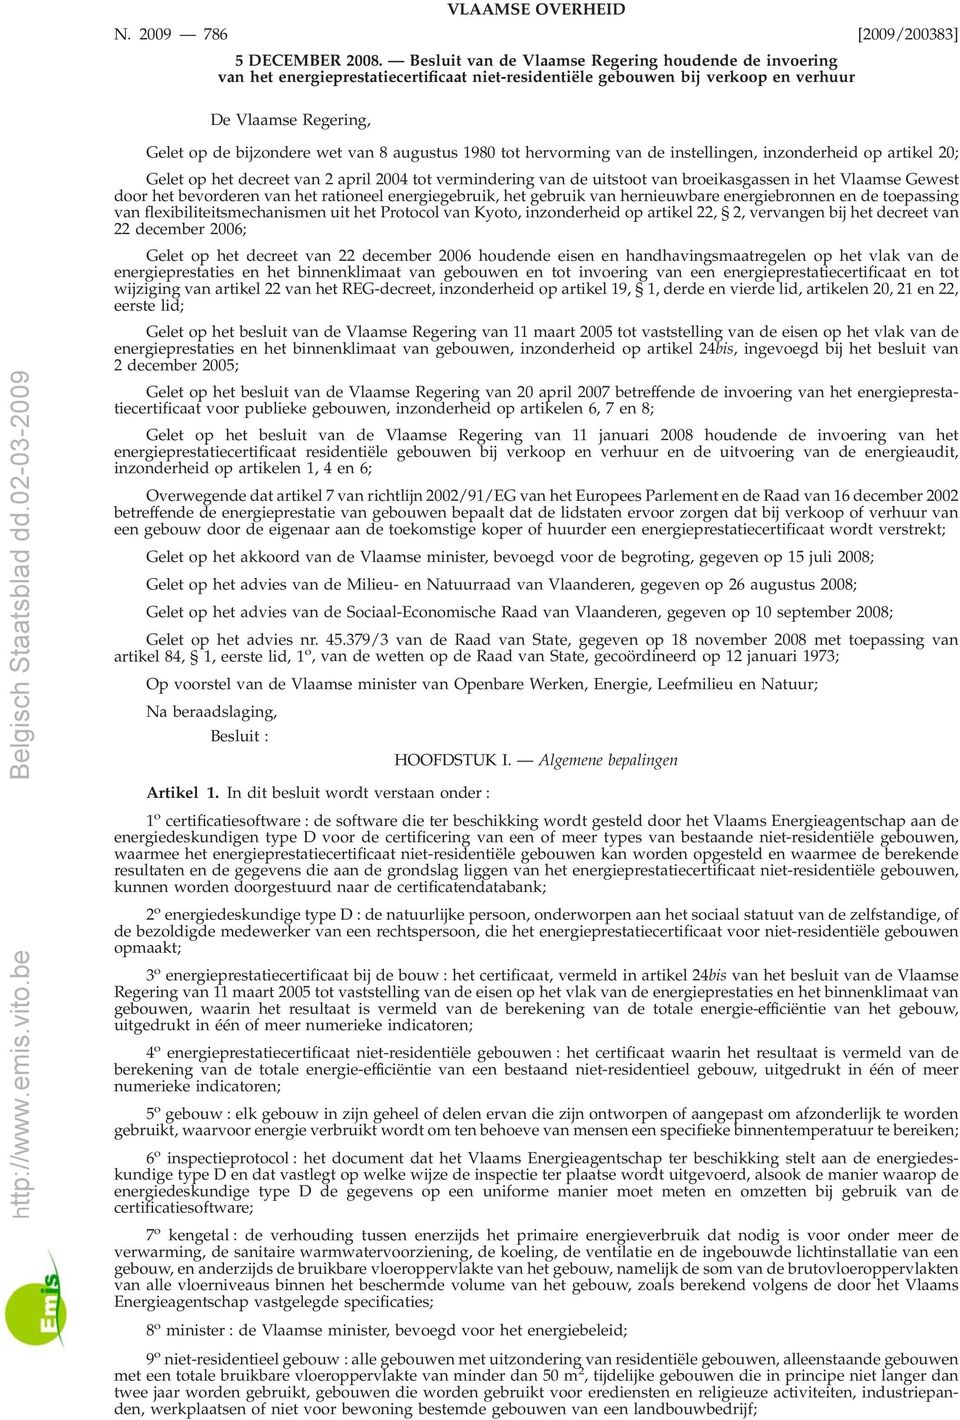 wet van 8 augustus 1980 tot hervorming van de instellingen, inzonderheid op artikel 20; Gelet op het decreet van 2 april 2004 tot vermindering van de uitstoot van broeikasgassen in het Vlaamse Gewest